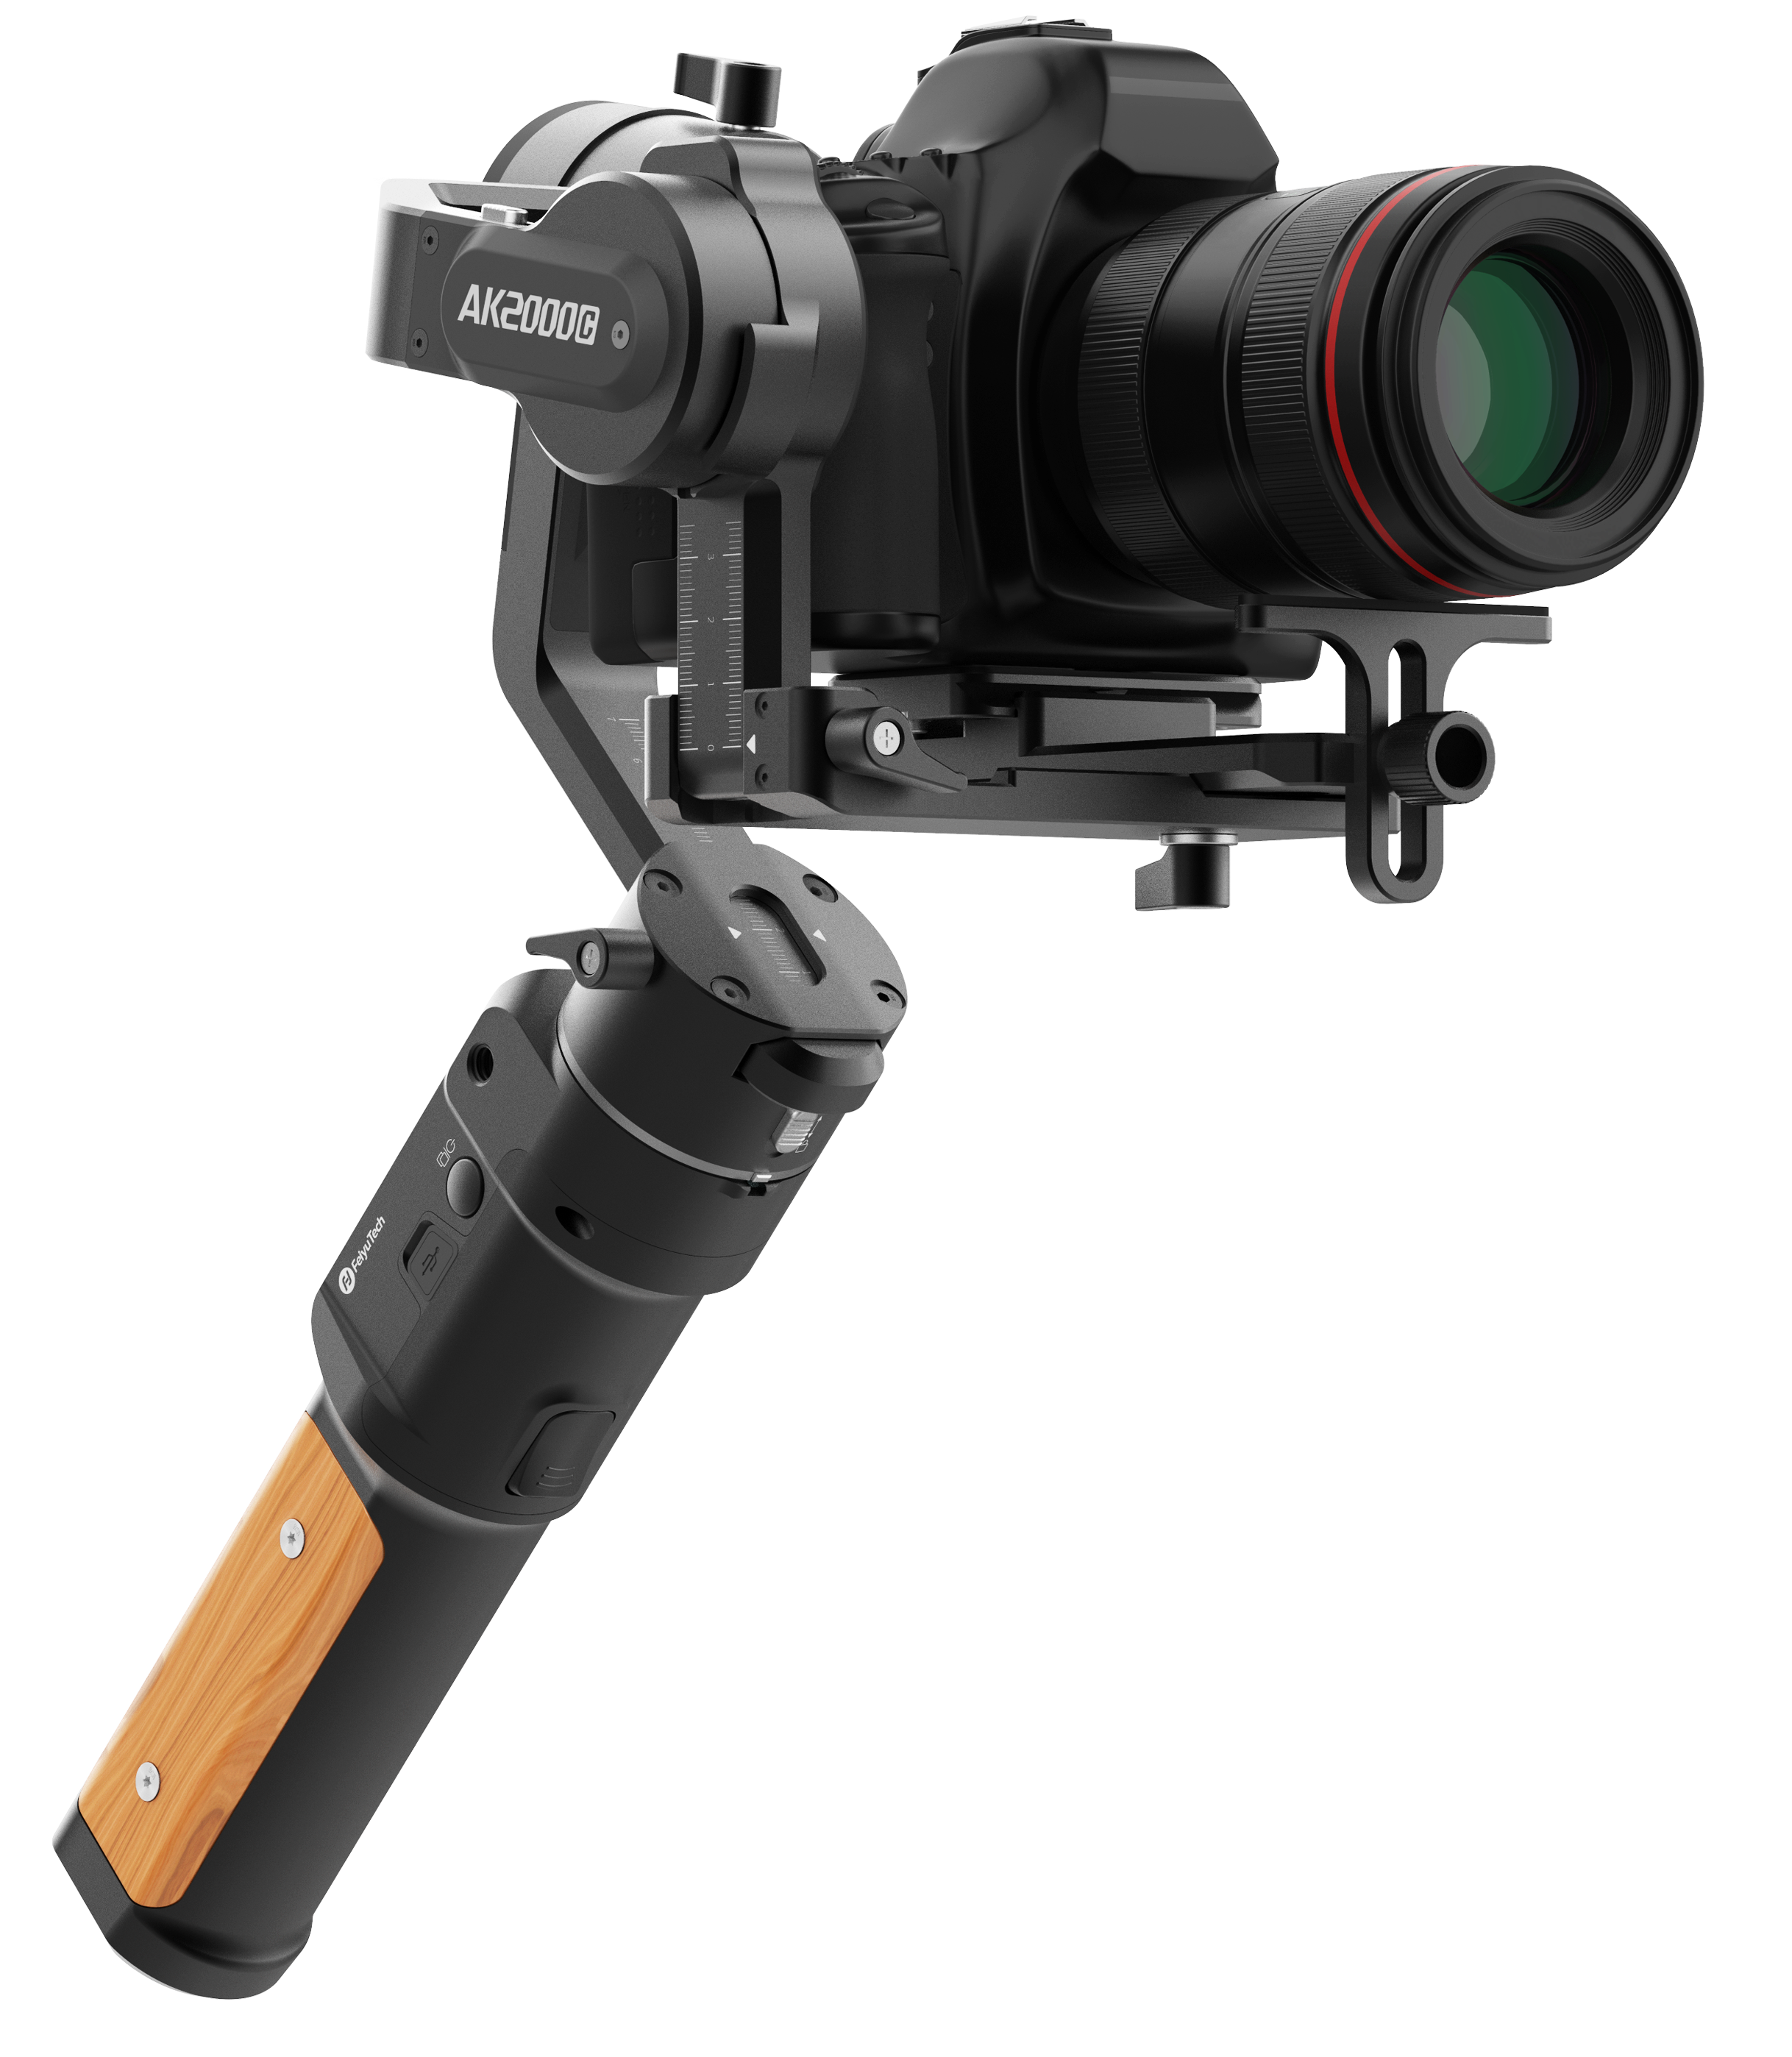 FeiyuTech AK2000マルチ対応カメラジンバル